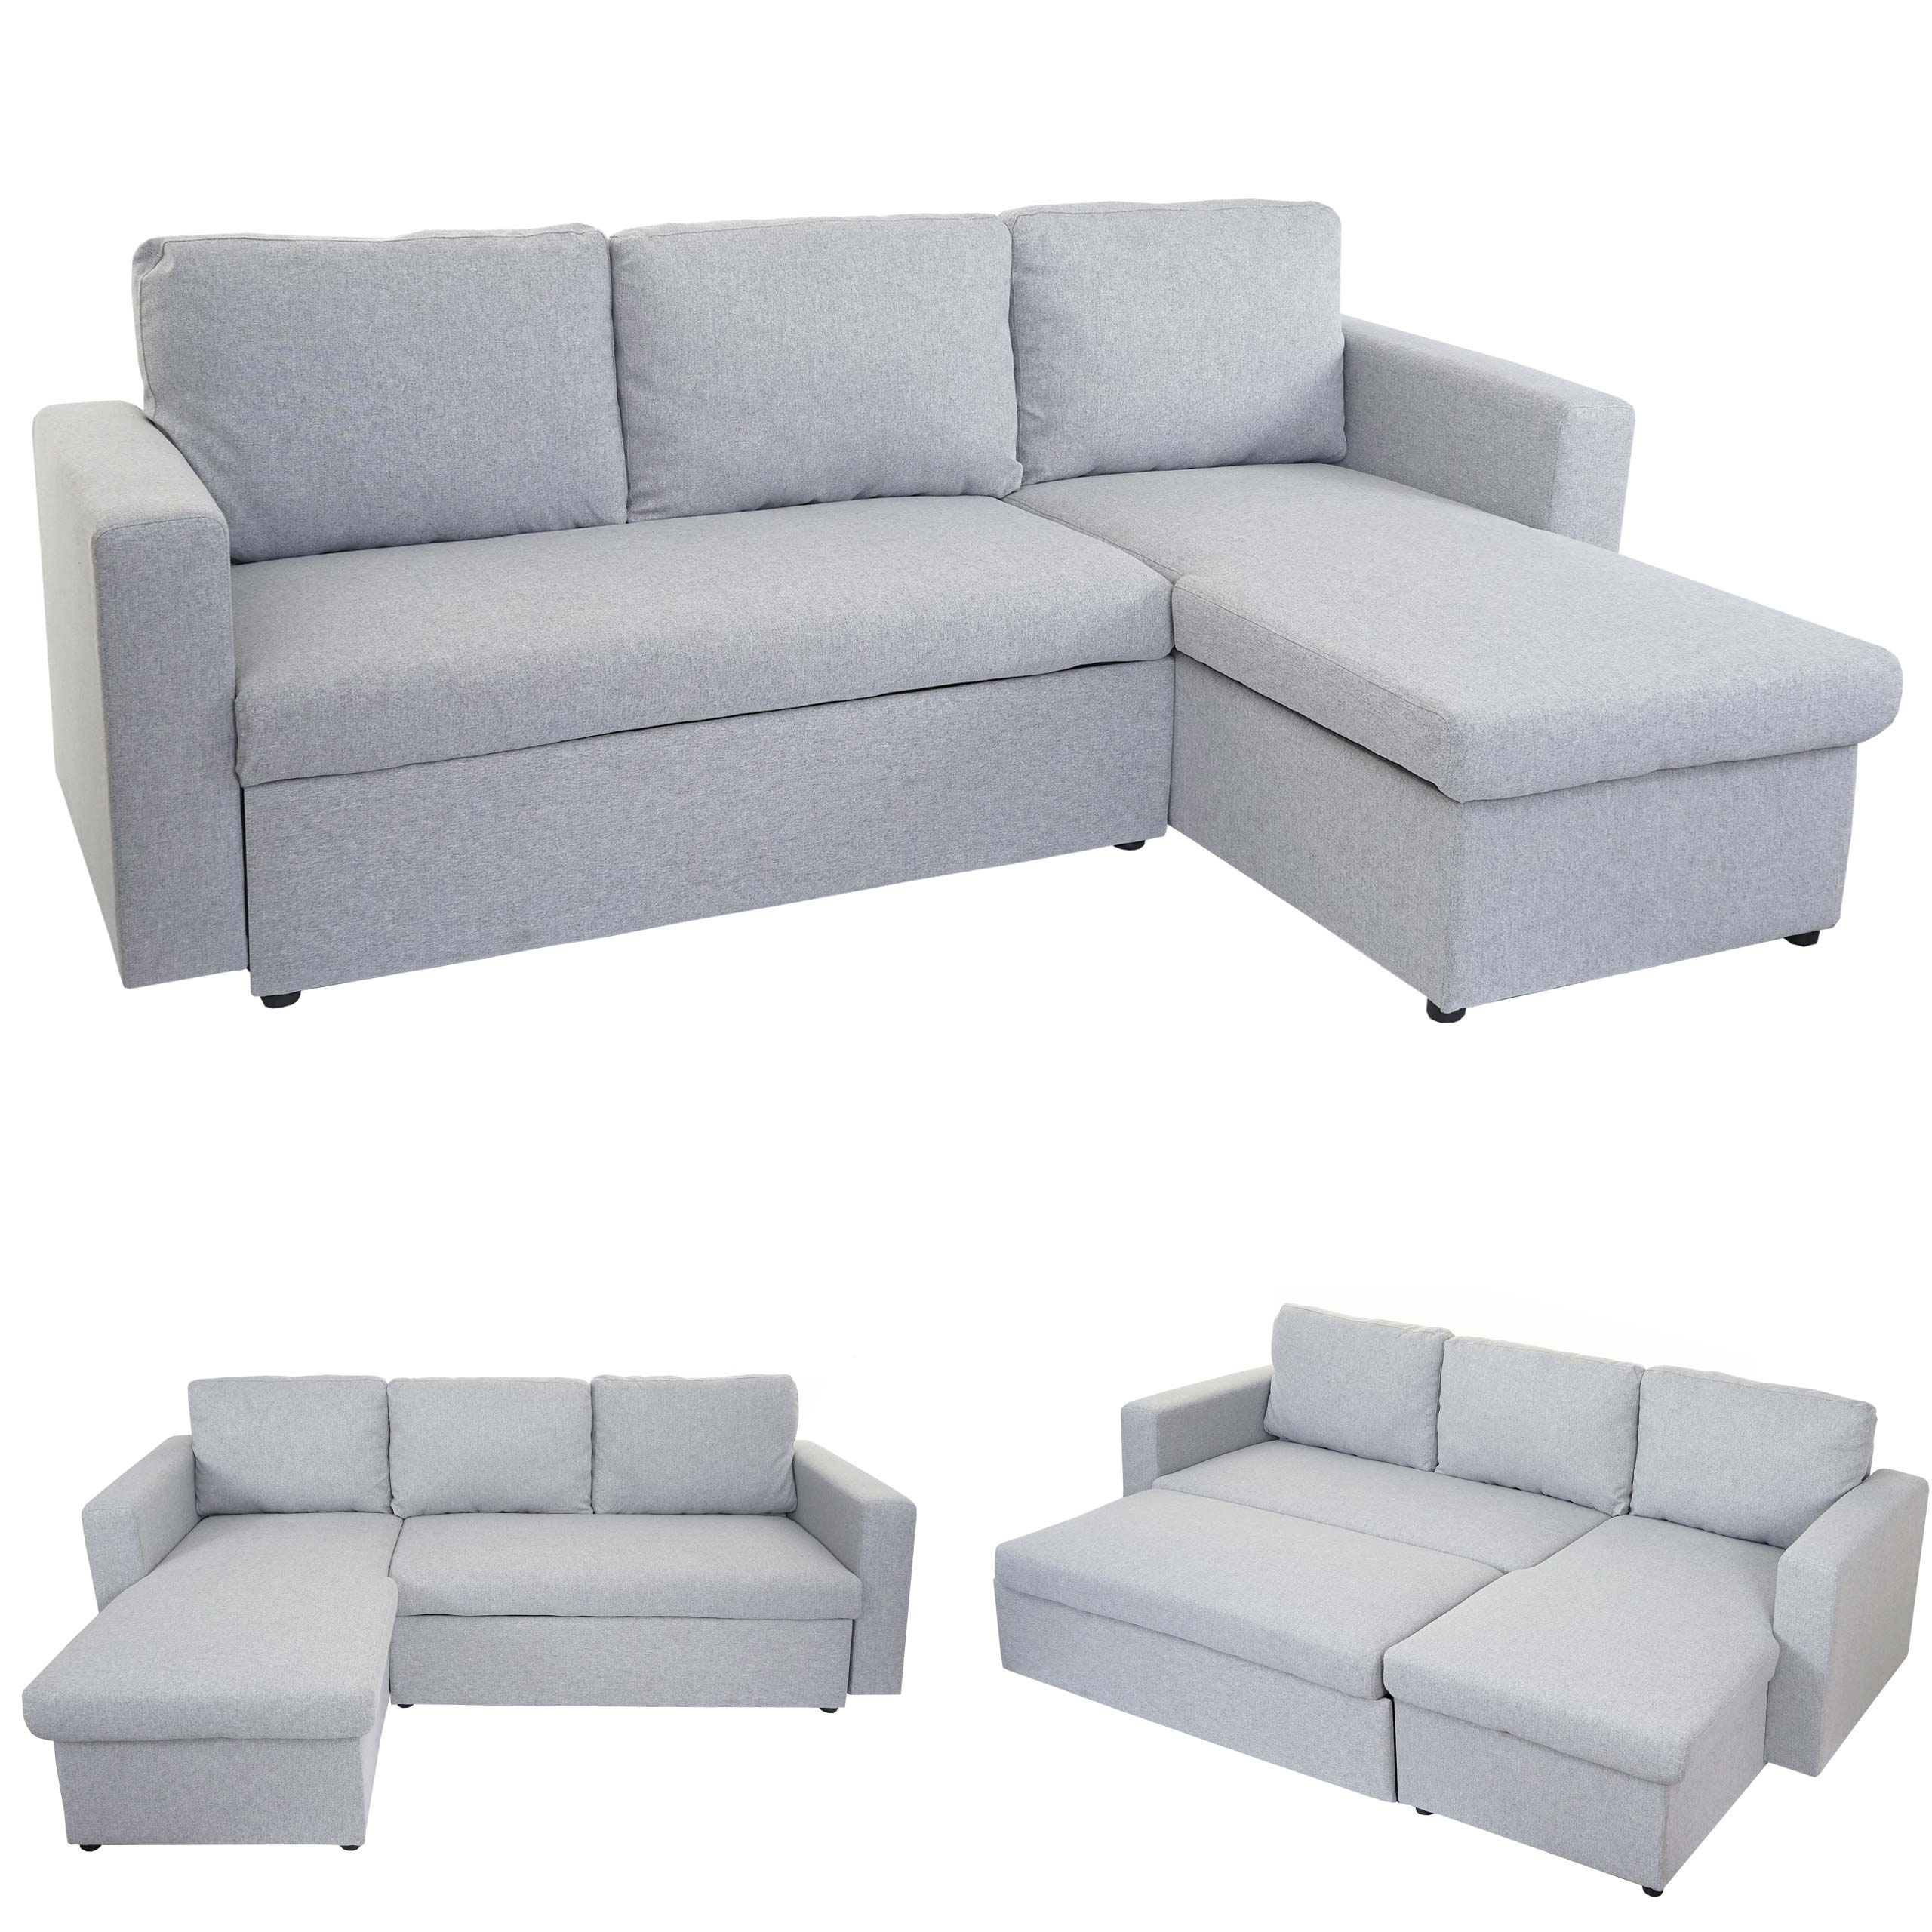 Schlafsofa HWC-D92, Couch Ecksofa Sofa, Schlaffunktion 220x152cm Stoff/Textil  | eBay